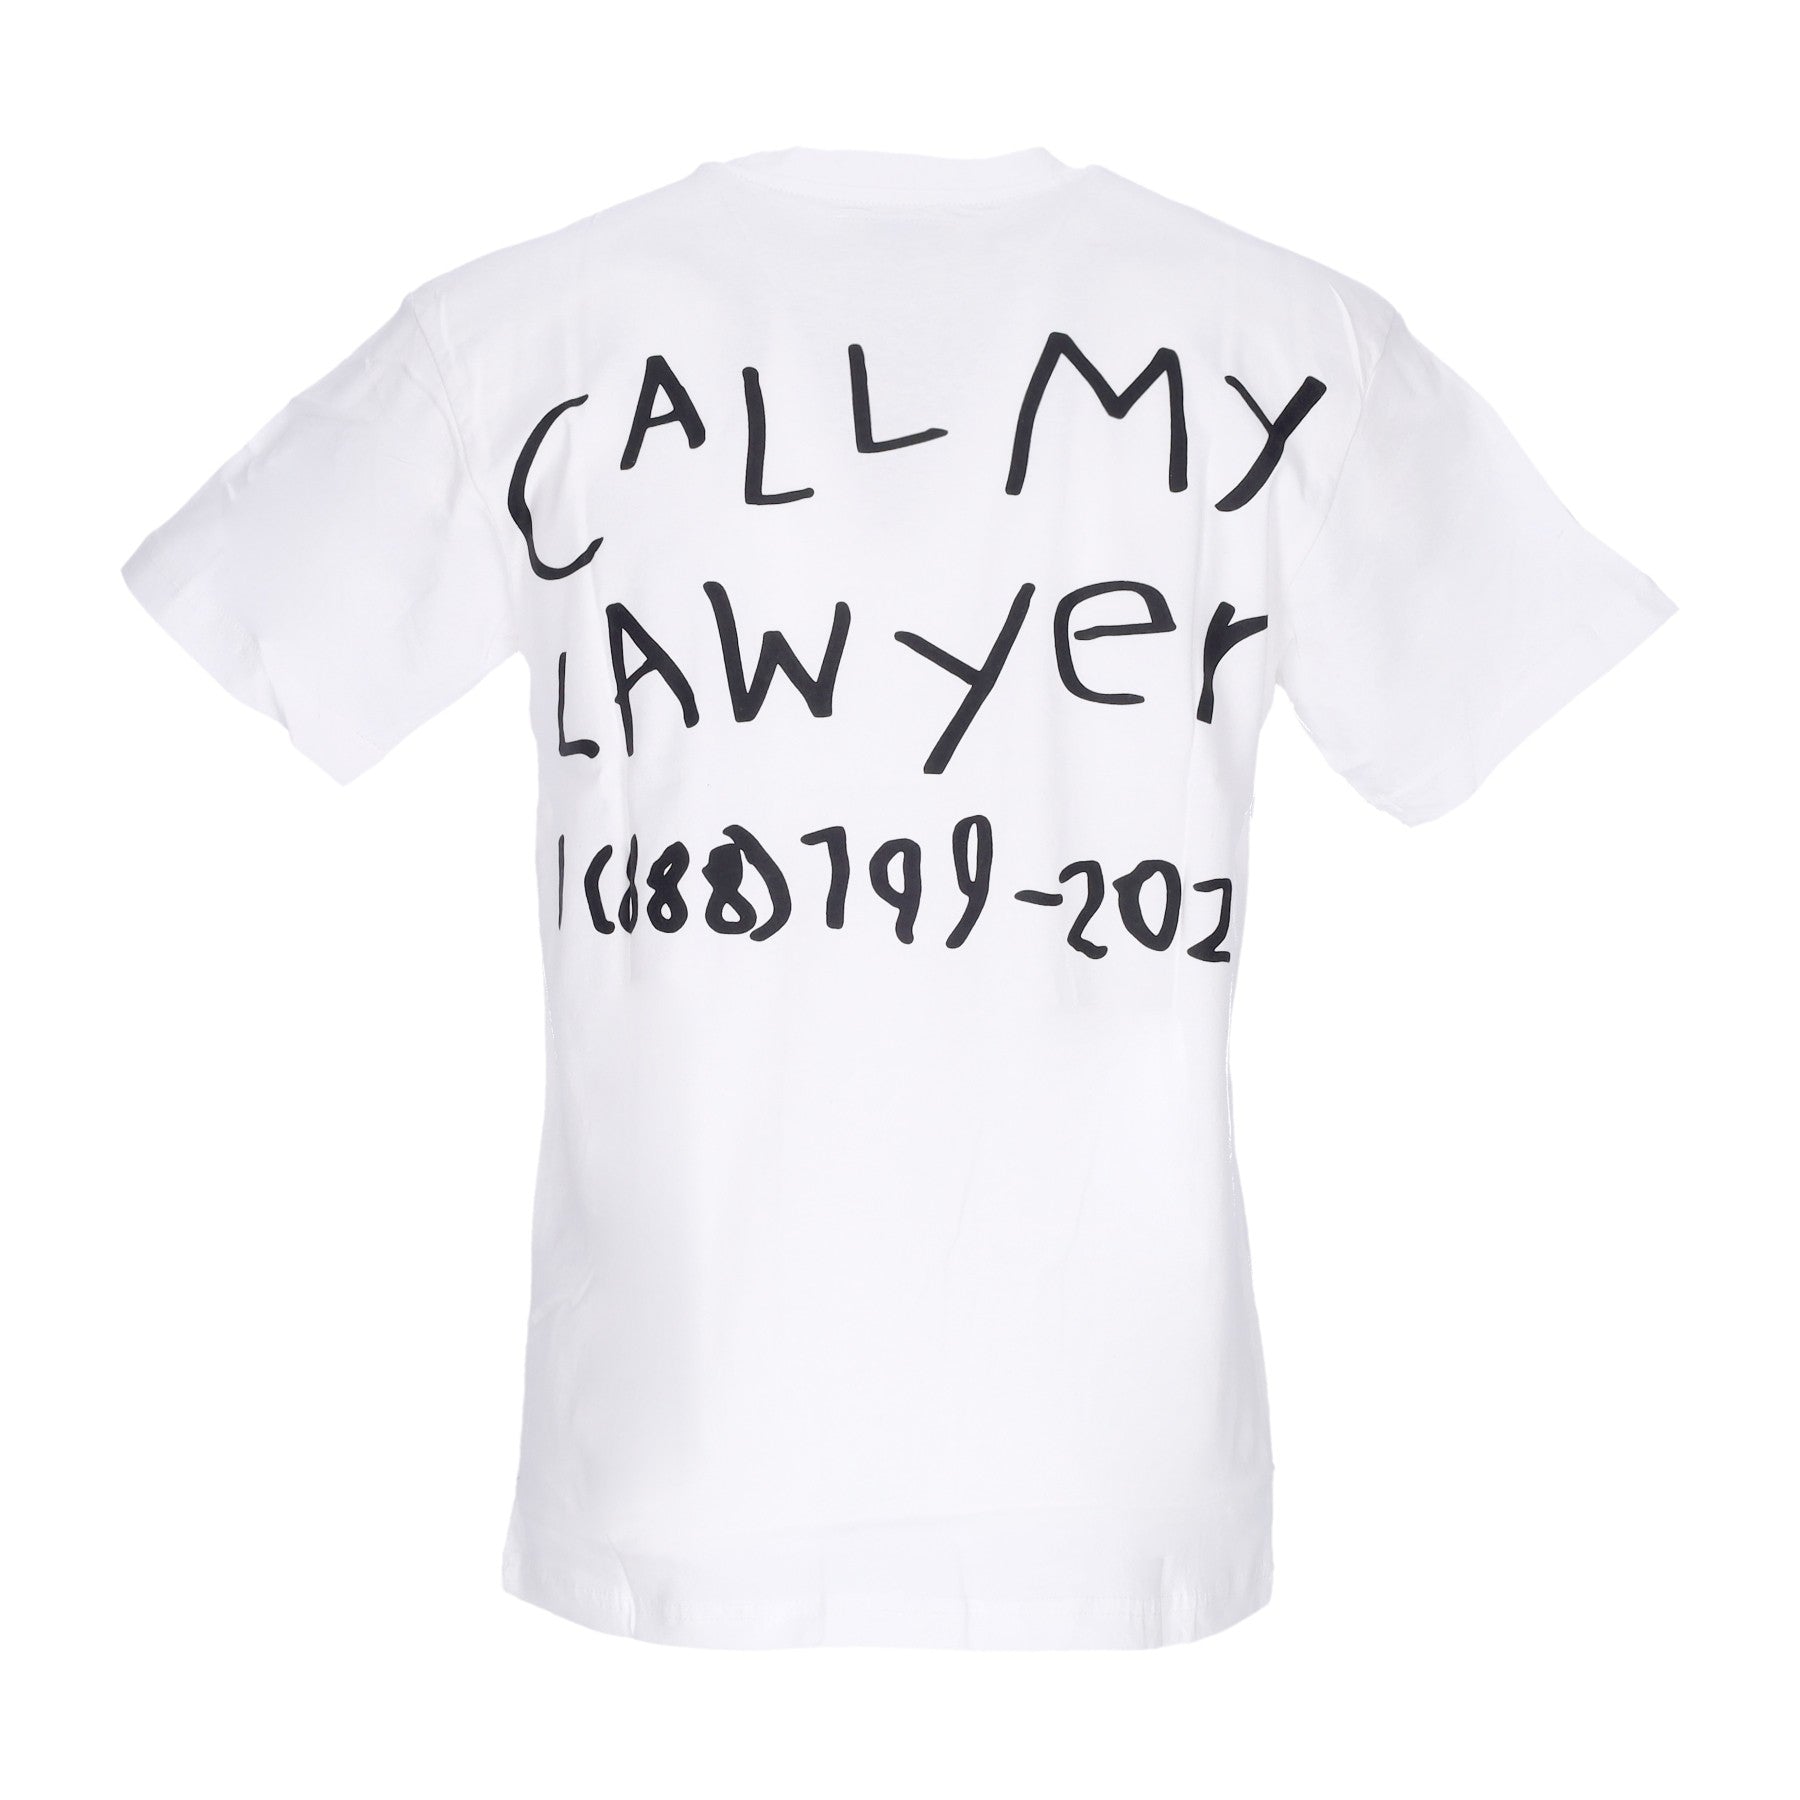 Call My Lawyer Hand Drawn Tee White Men's T-Shirt